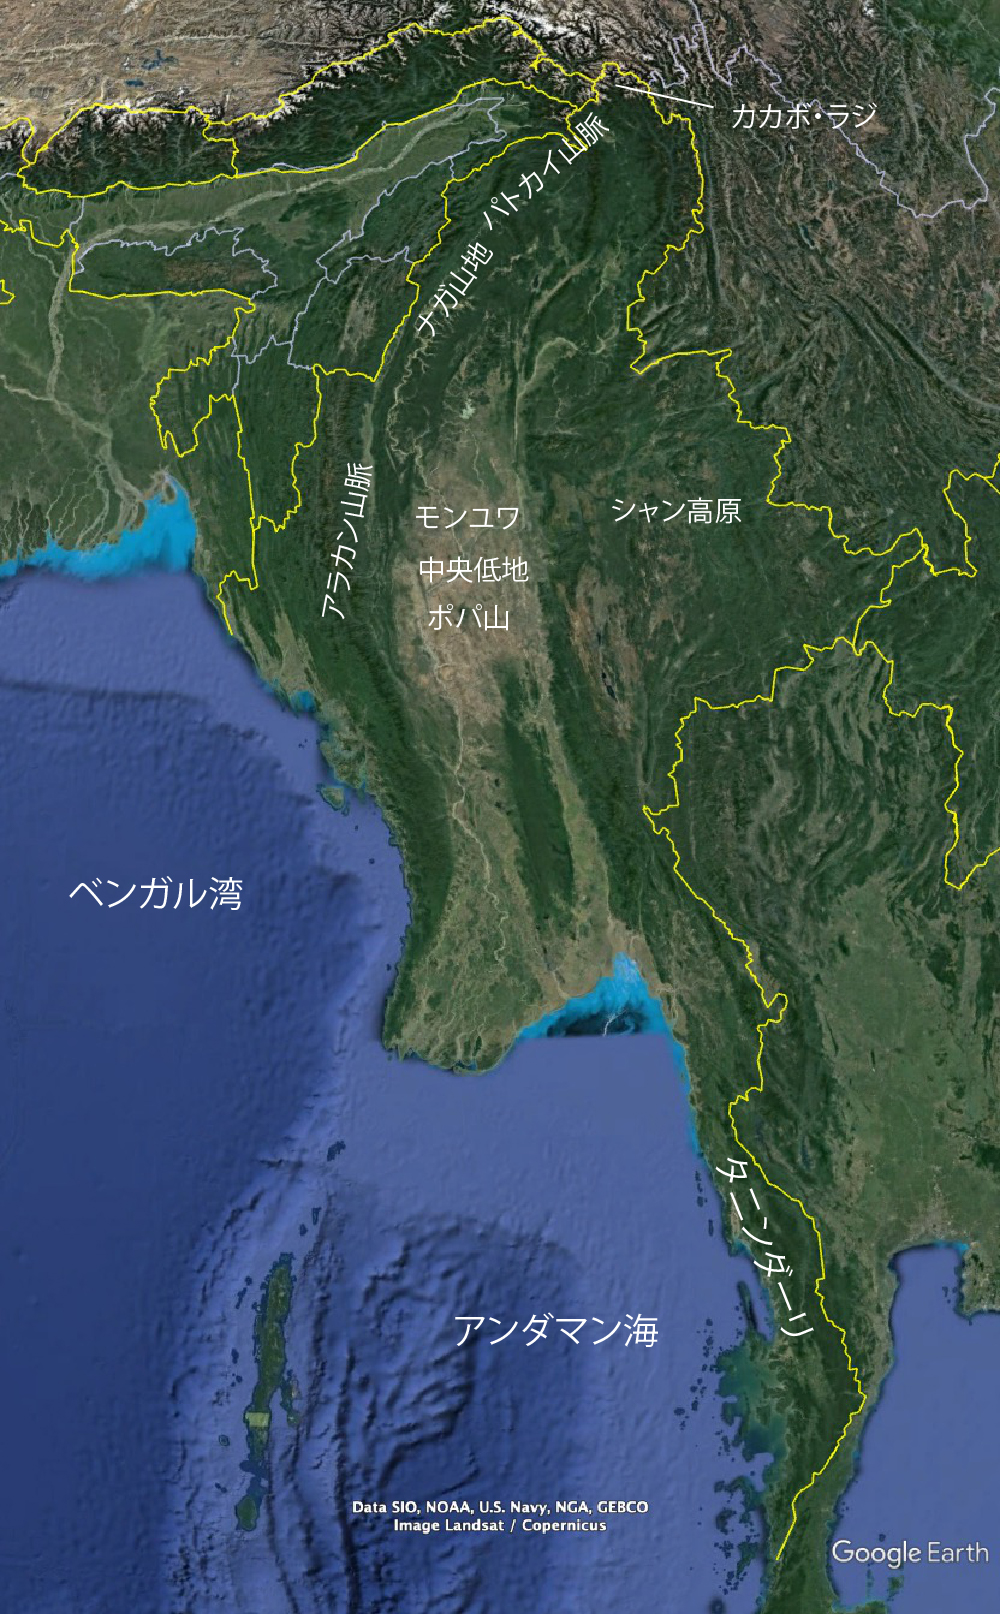 Topography of Myanmar